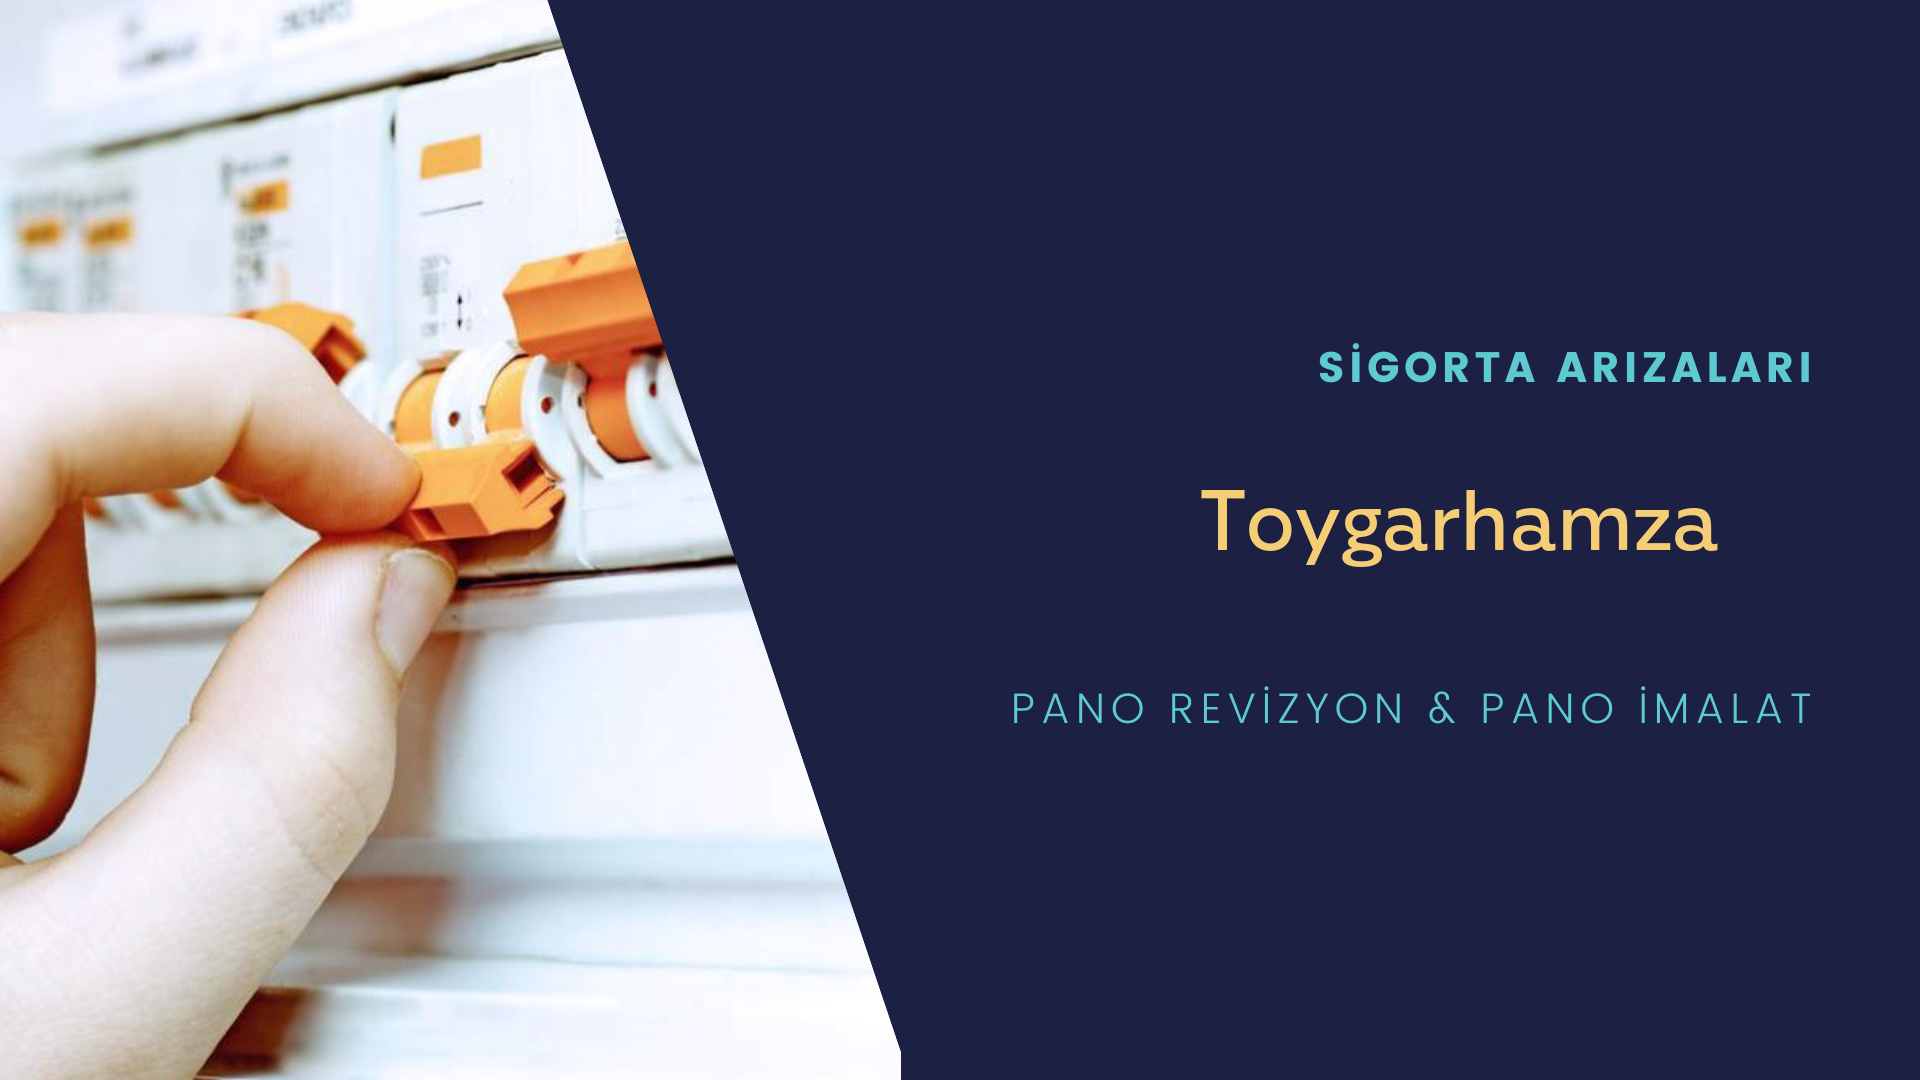 Toygarhamza  Sigorta Arızaları İçin Profesyonel Elektrikçi ustalarımızı dilediğiniz zaman arayabilir talepte bulunabilirsiniz.